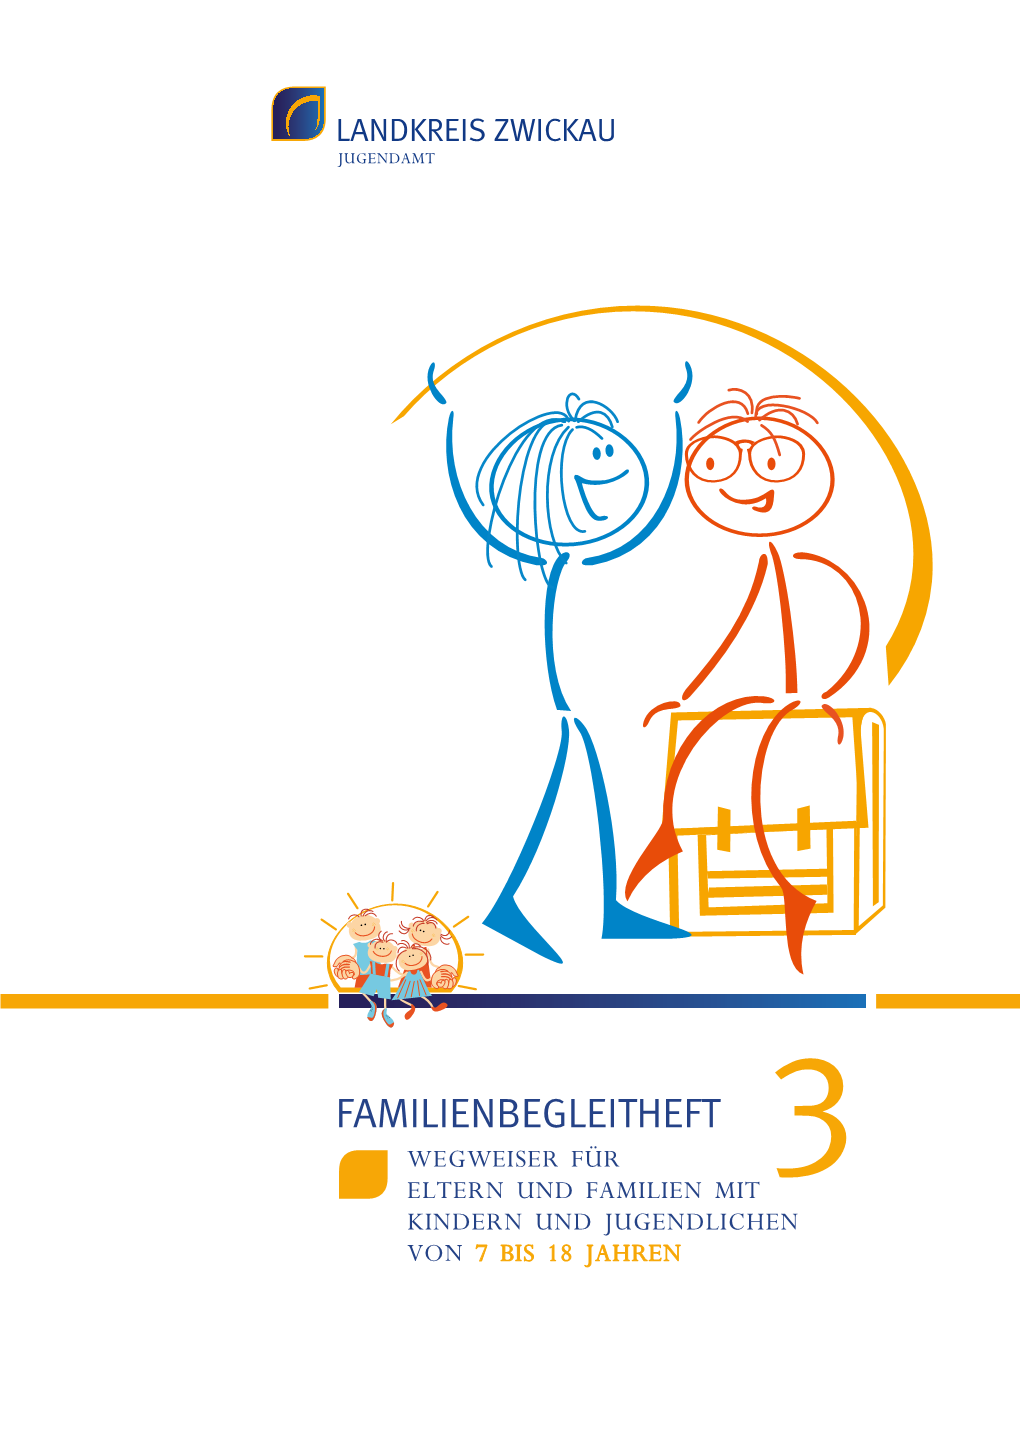 Familienbegleitheft 3 Wegweiser Für Eltern Und Familien Mit Kindern Und Jugendlichen Von 7 Bis 18 Jahren